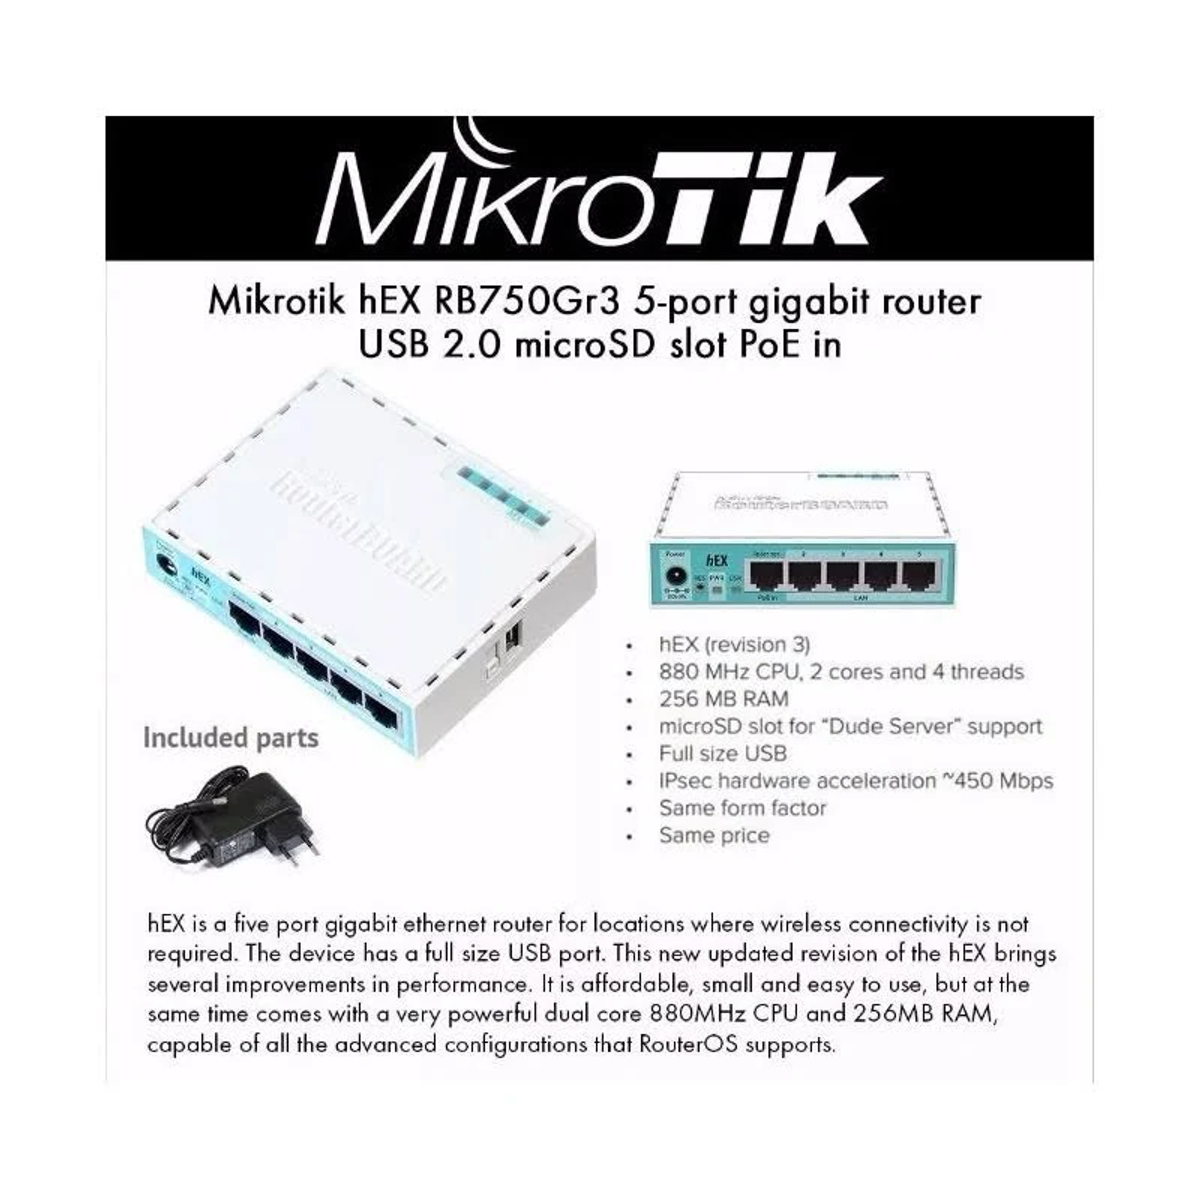 RB750Gr3 MIKROTIK Router